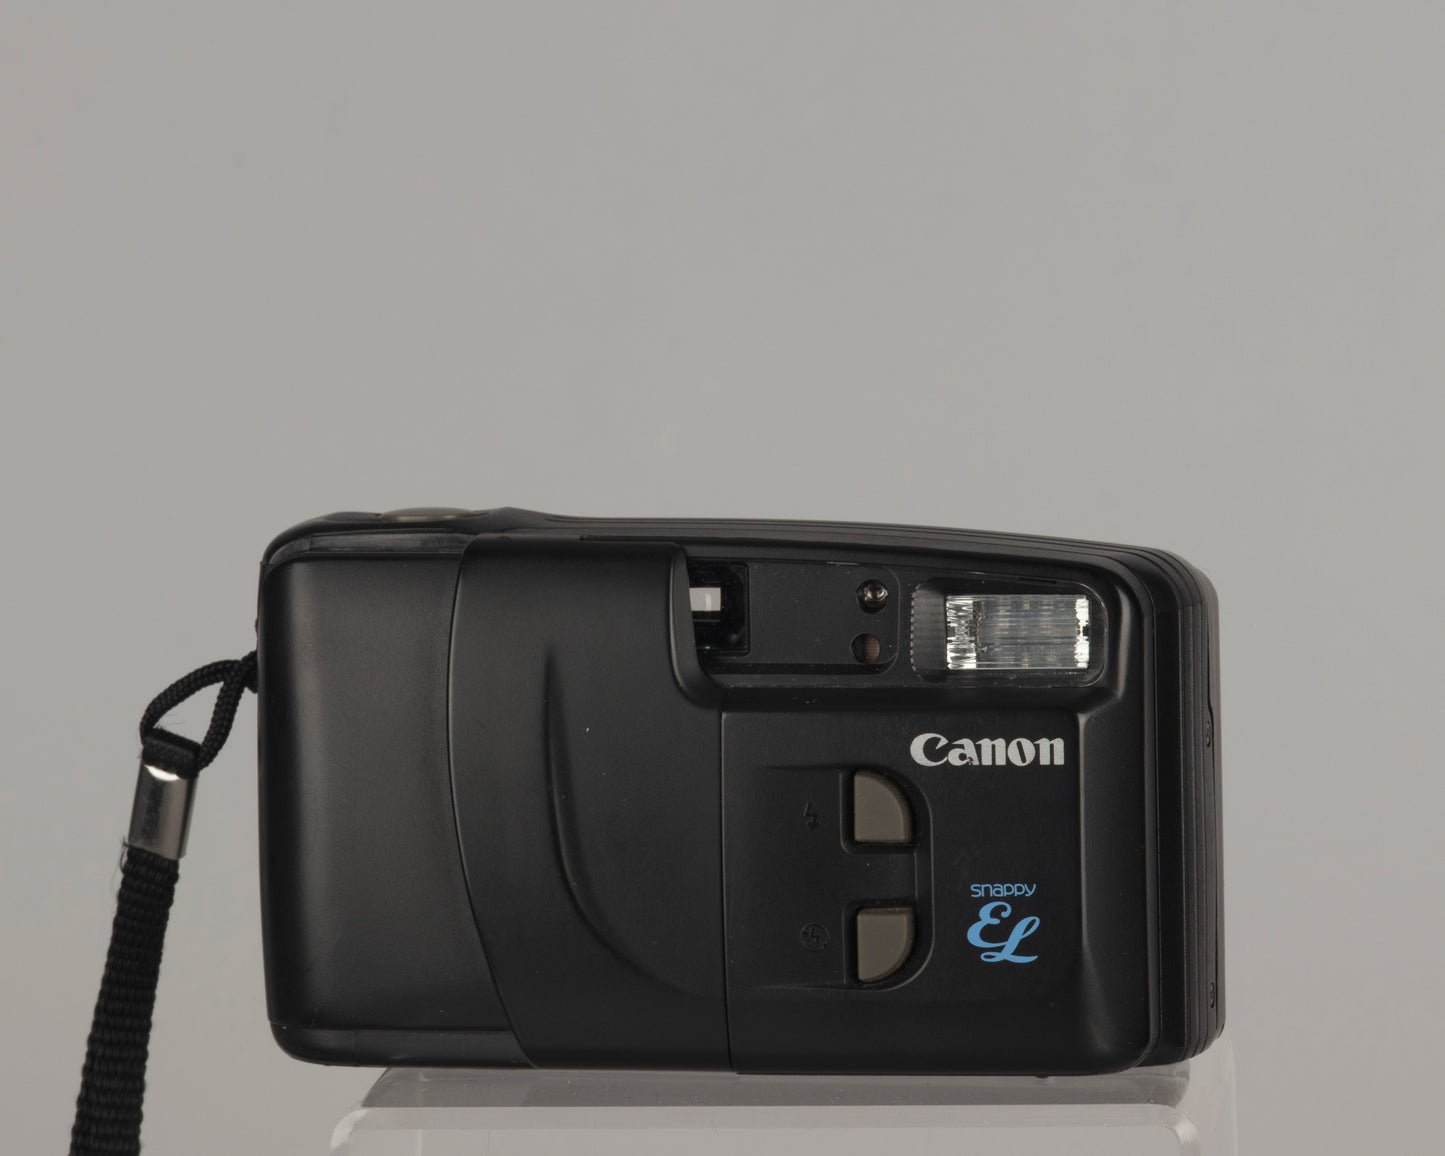 Appareil photo Canon New Snappy EL 35 mm avec étui (série 1129789)